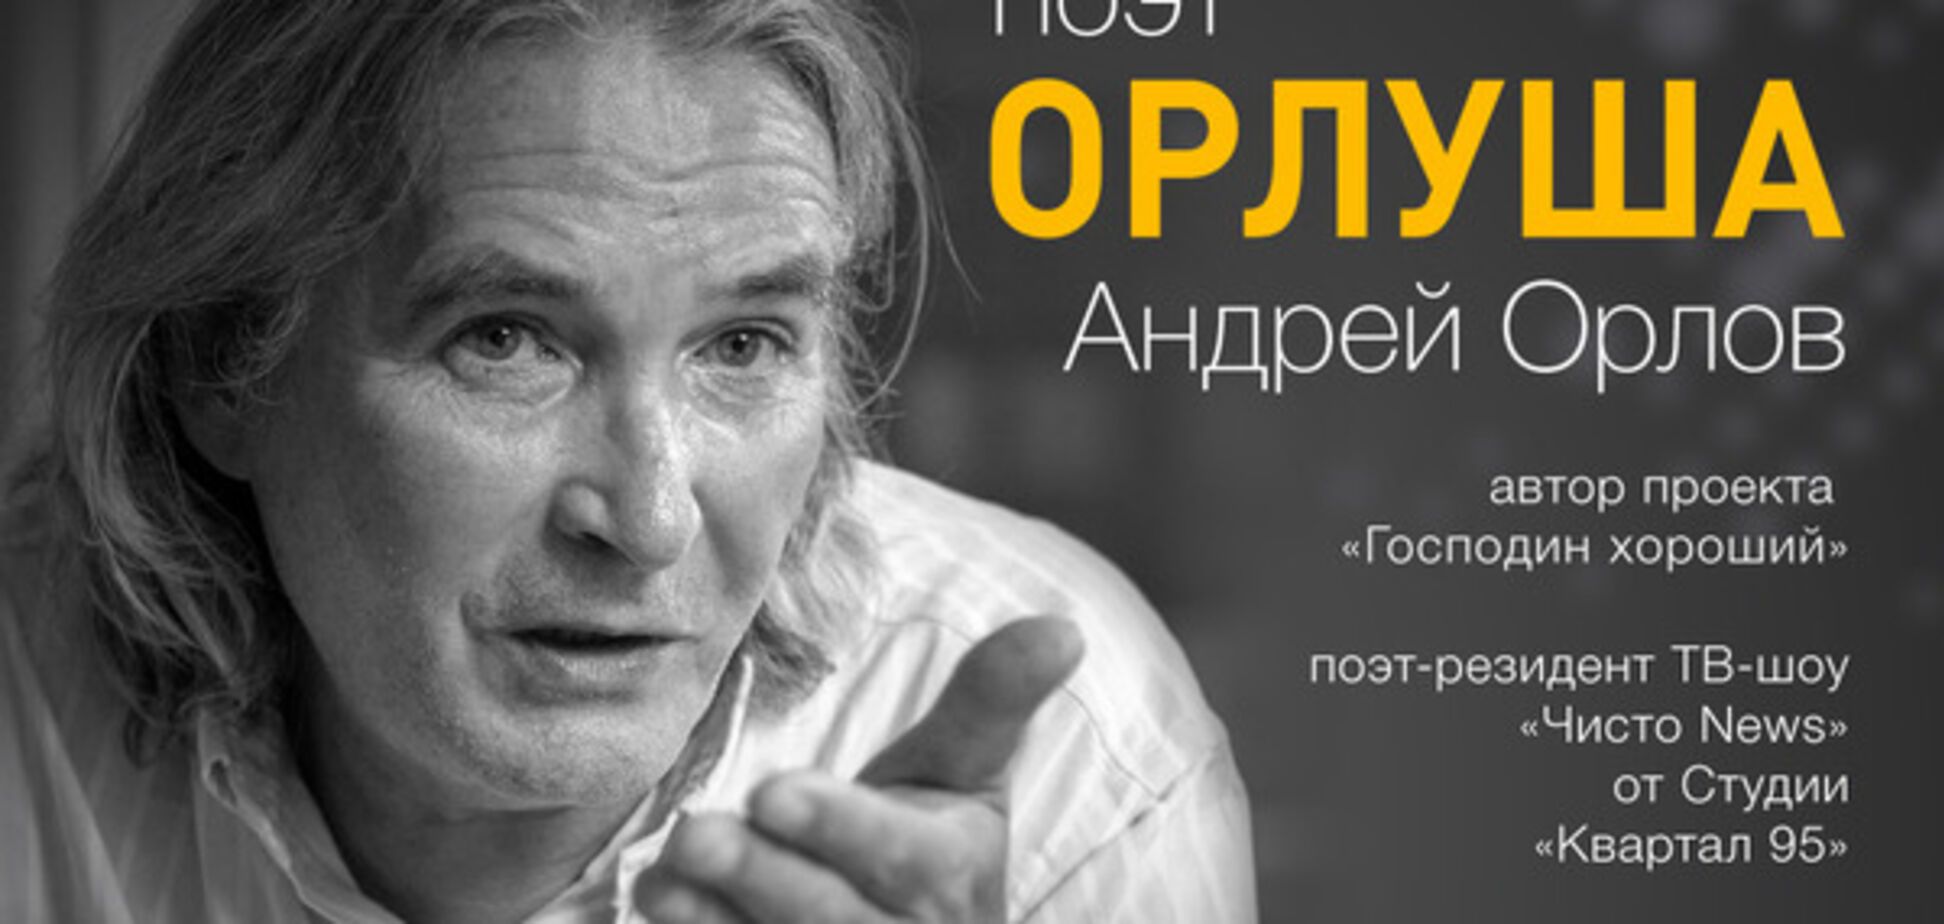 Скандальный поэт Орлуша выступит в Киеве